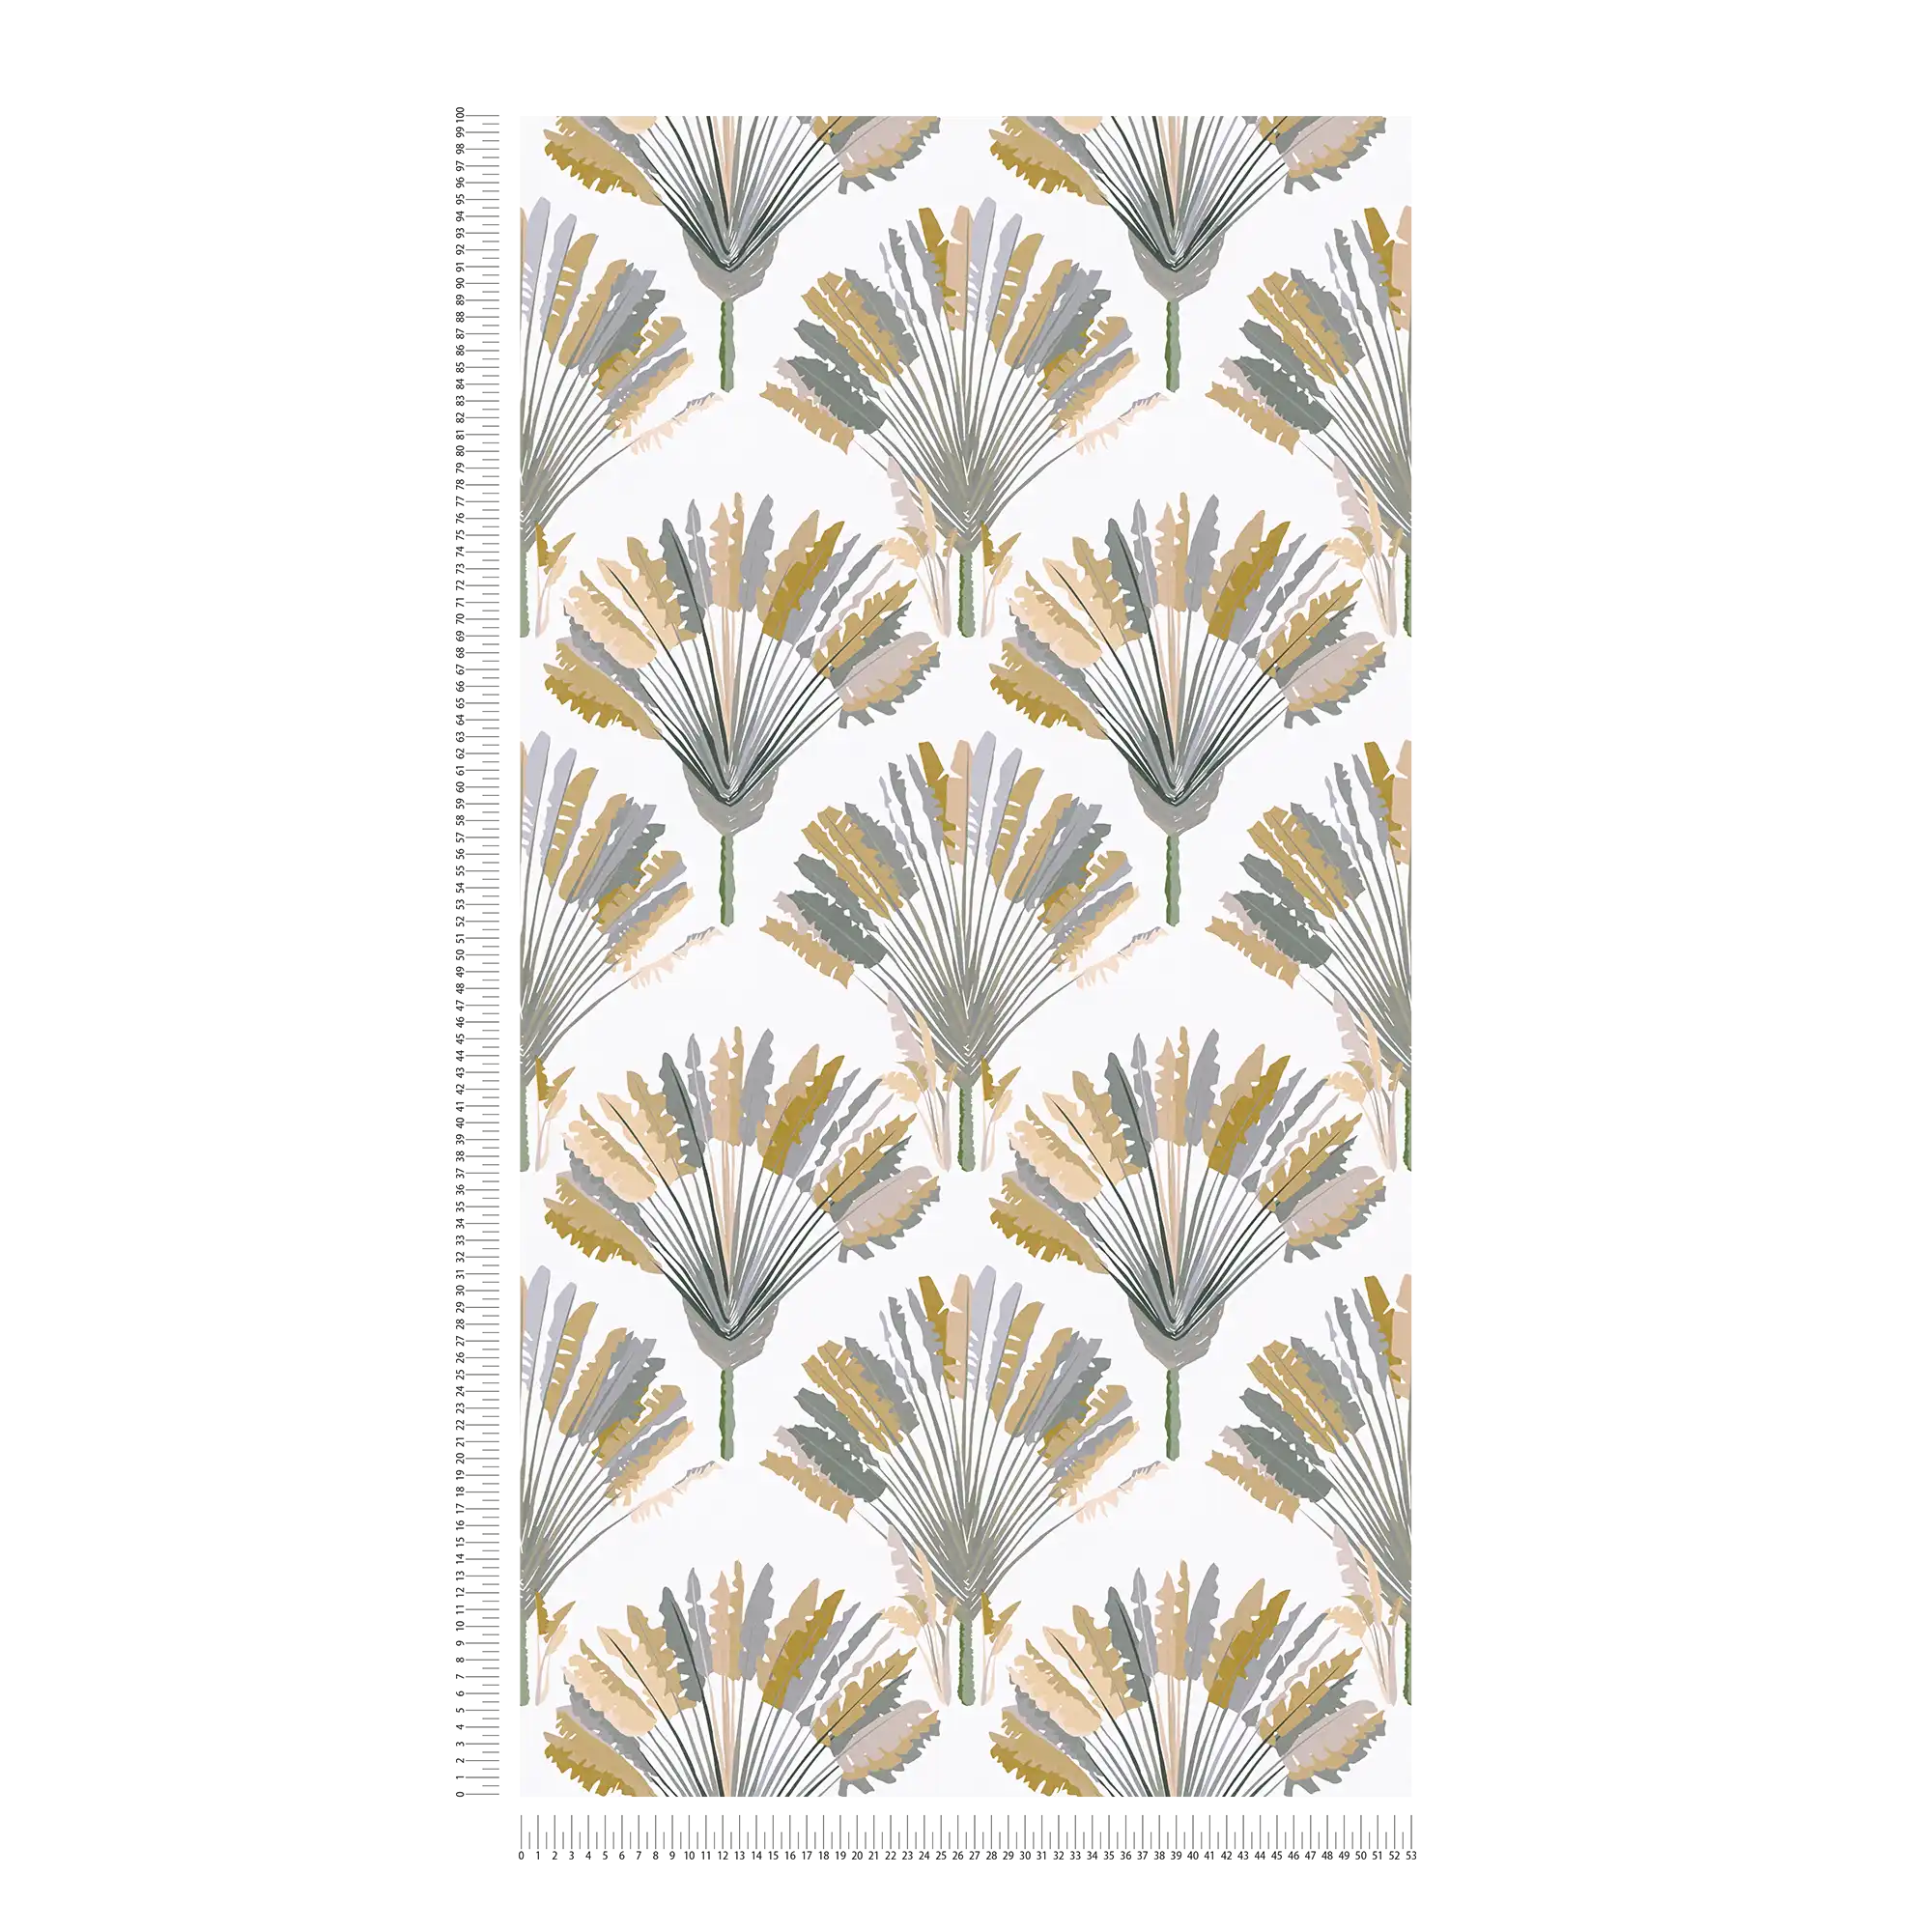             Palmen Tapete mit Musterdruck im modernen Stil – Gelb, Grau, Weiß
        